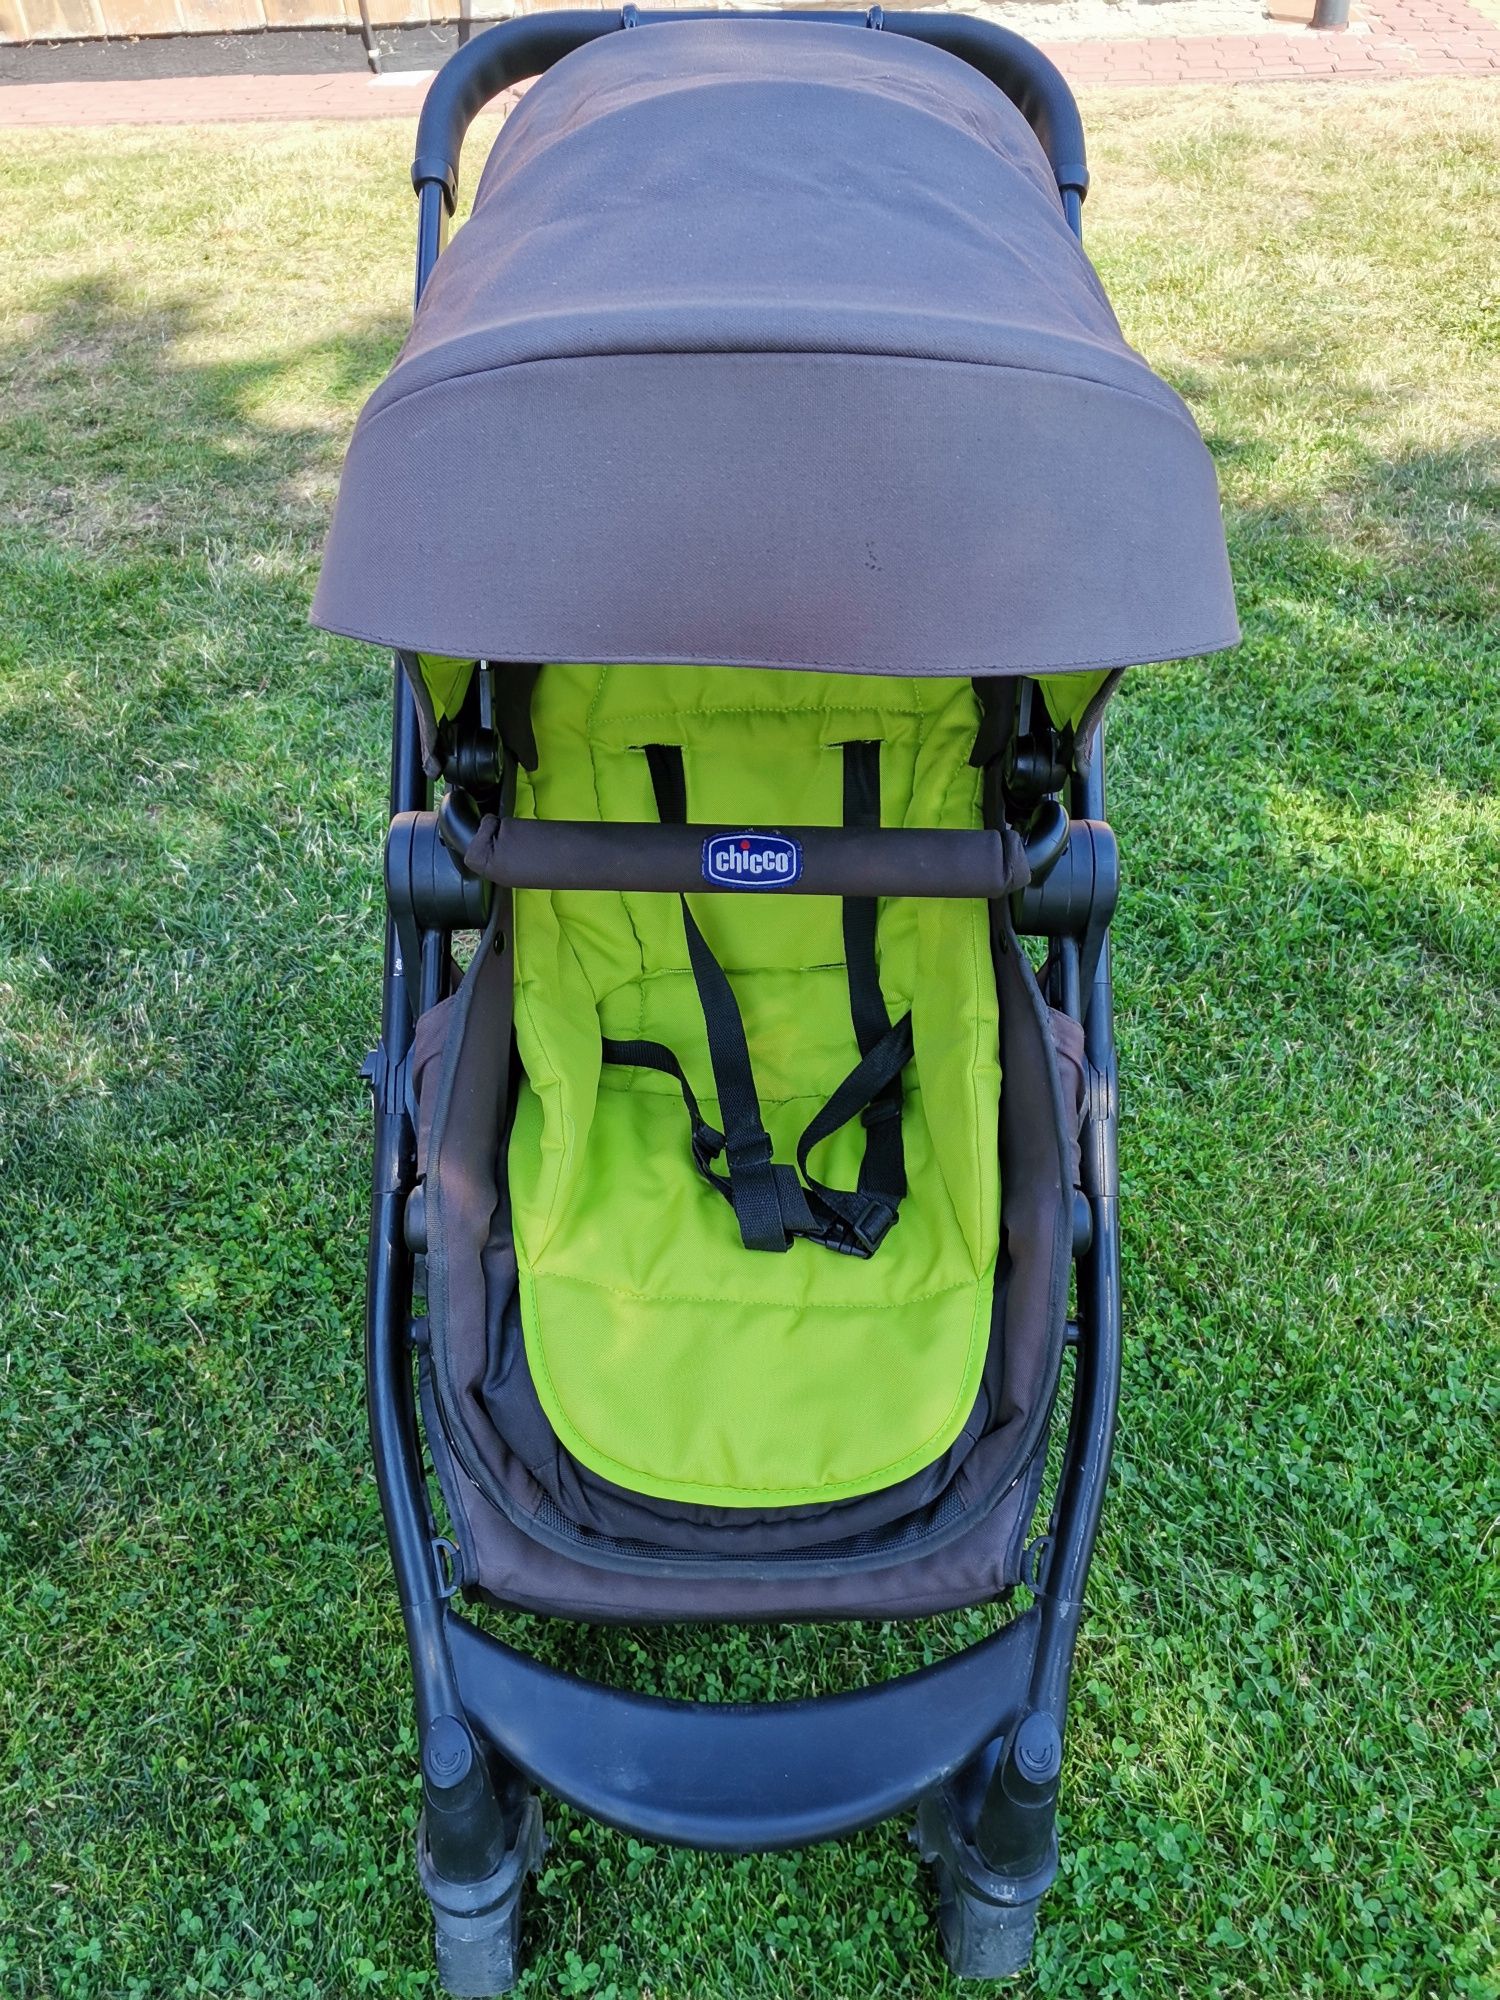 Wózek 2w1 Chicco Urban czarny zielony spacerowy i dla niemowlaka